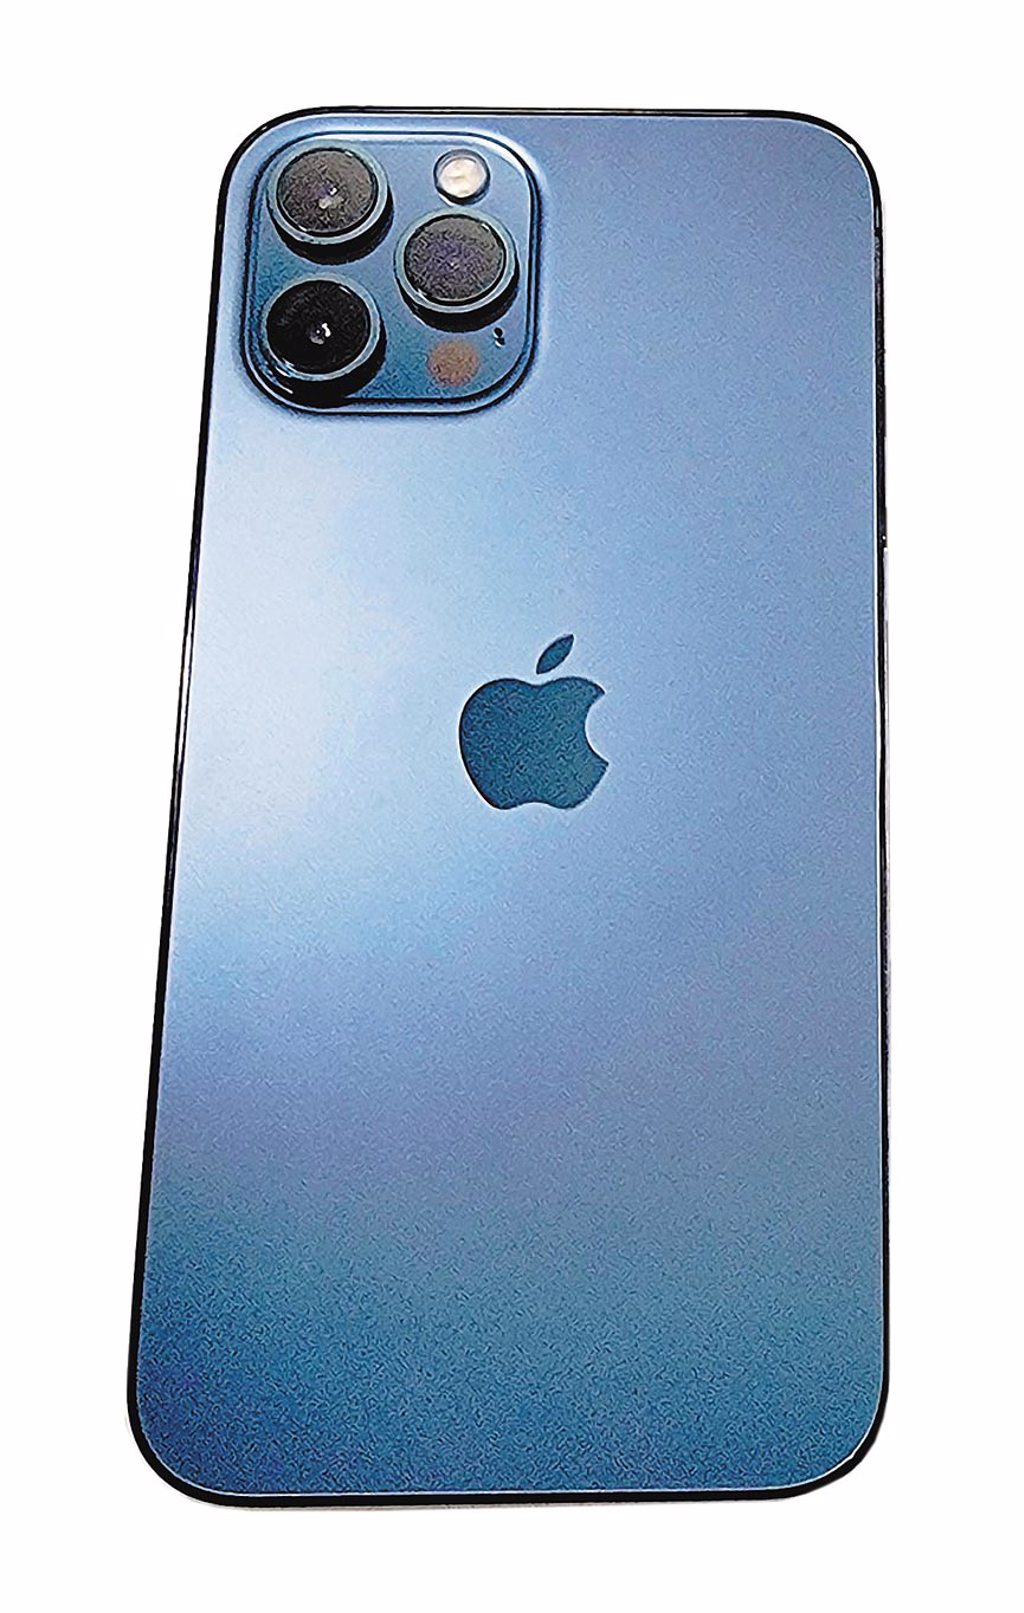 蘋果iPhone 12 Pro Max，共石墨色、銀色、金色、太平洋藍 4色，3萬7900元起。（石欣蒨攝）